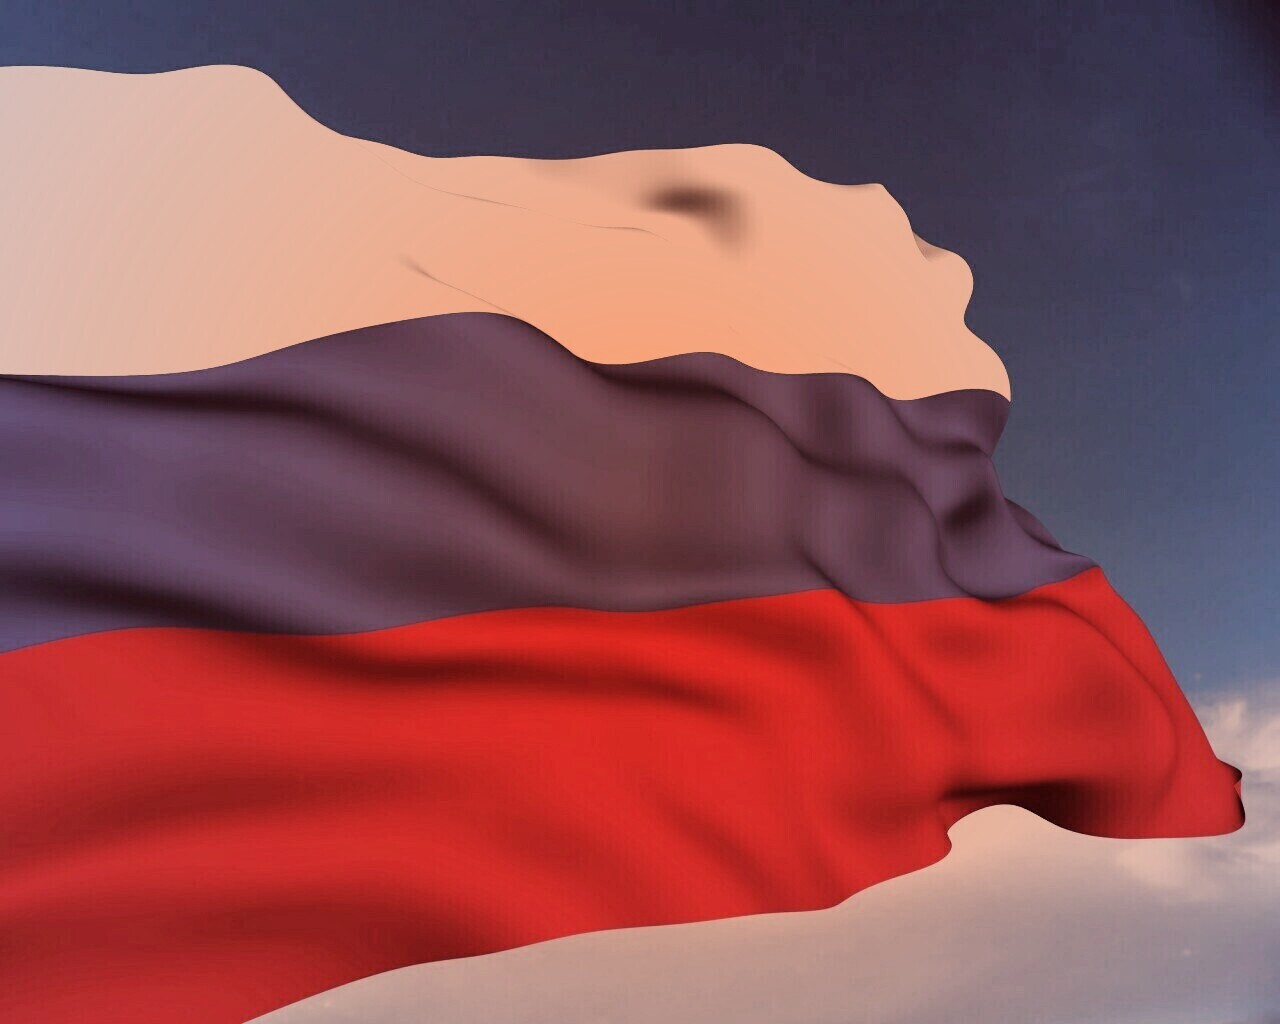 Флаг России обои